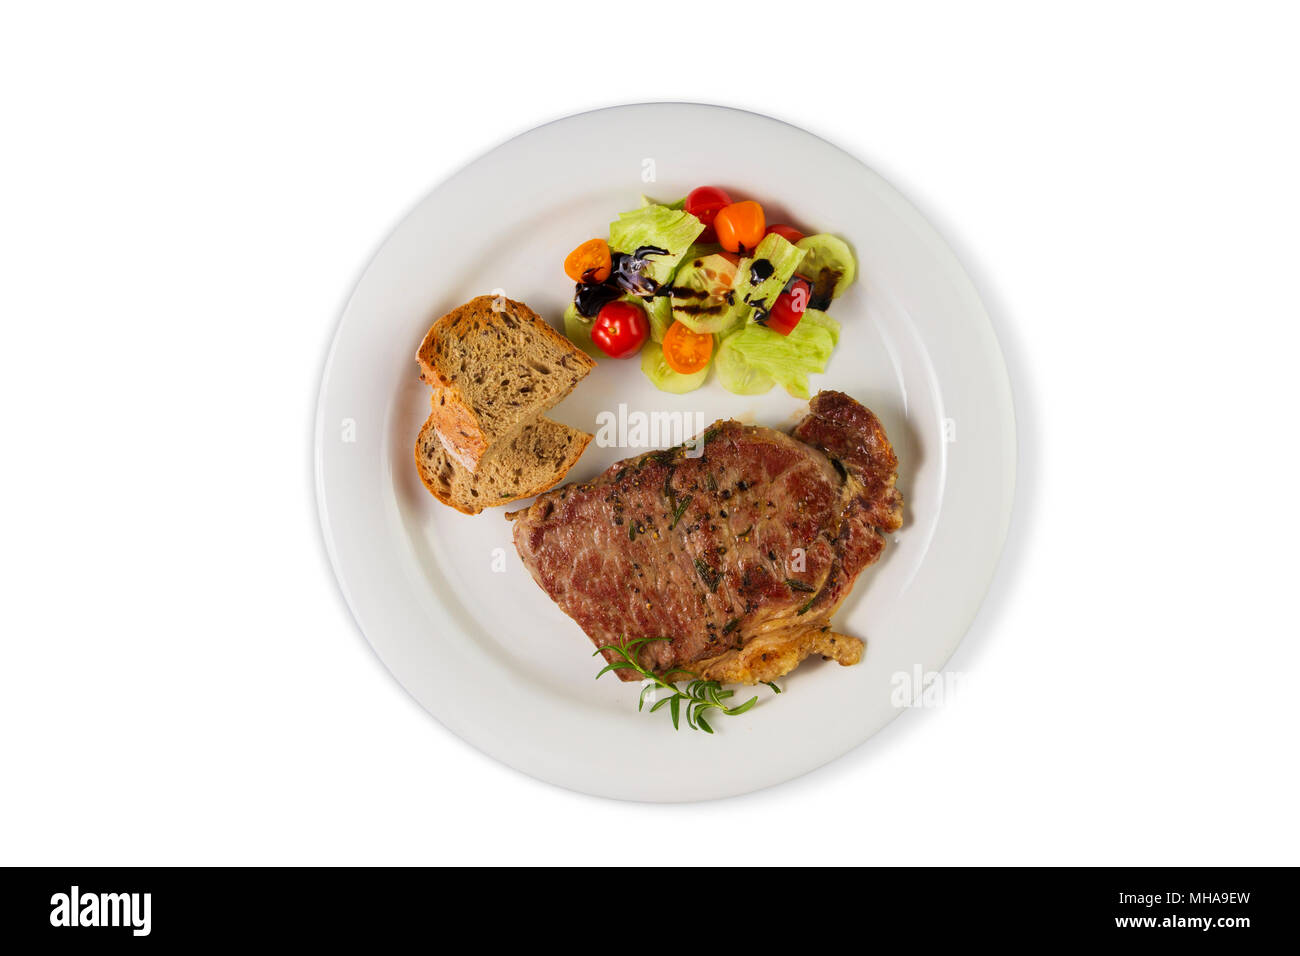 Croupe de boeuf assaisonné mûries ou faux filet steak cuit sur plaque blanche avec de la salade et du pain fait maison. Vue de dessus isolé sur fond blanc. Banque D'Images